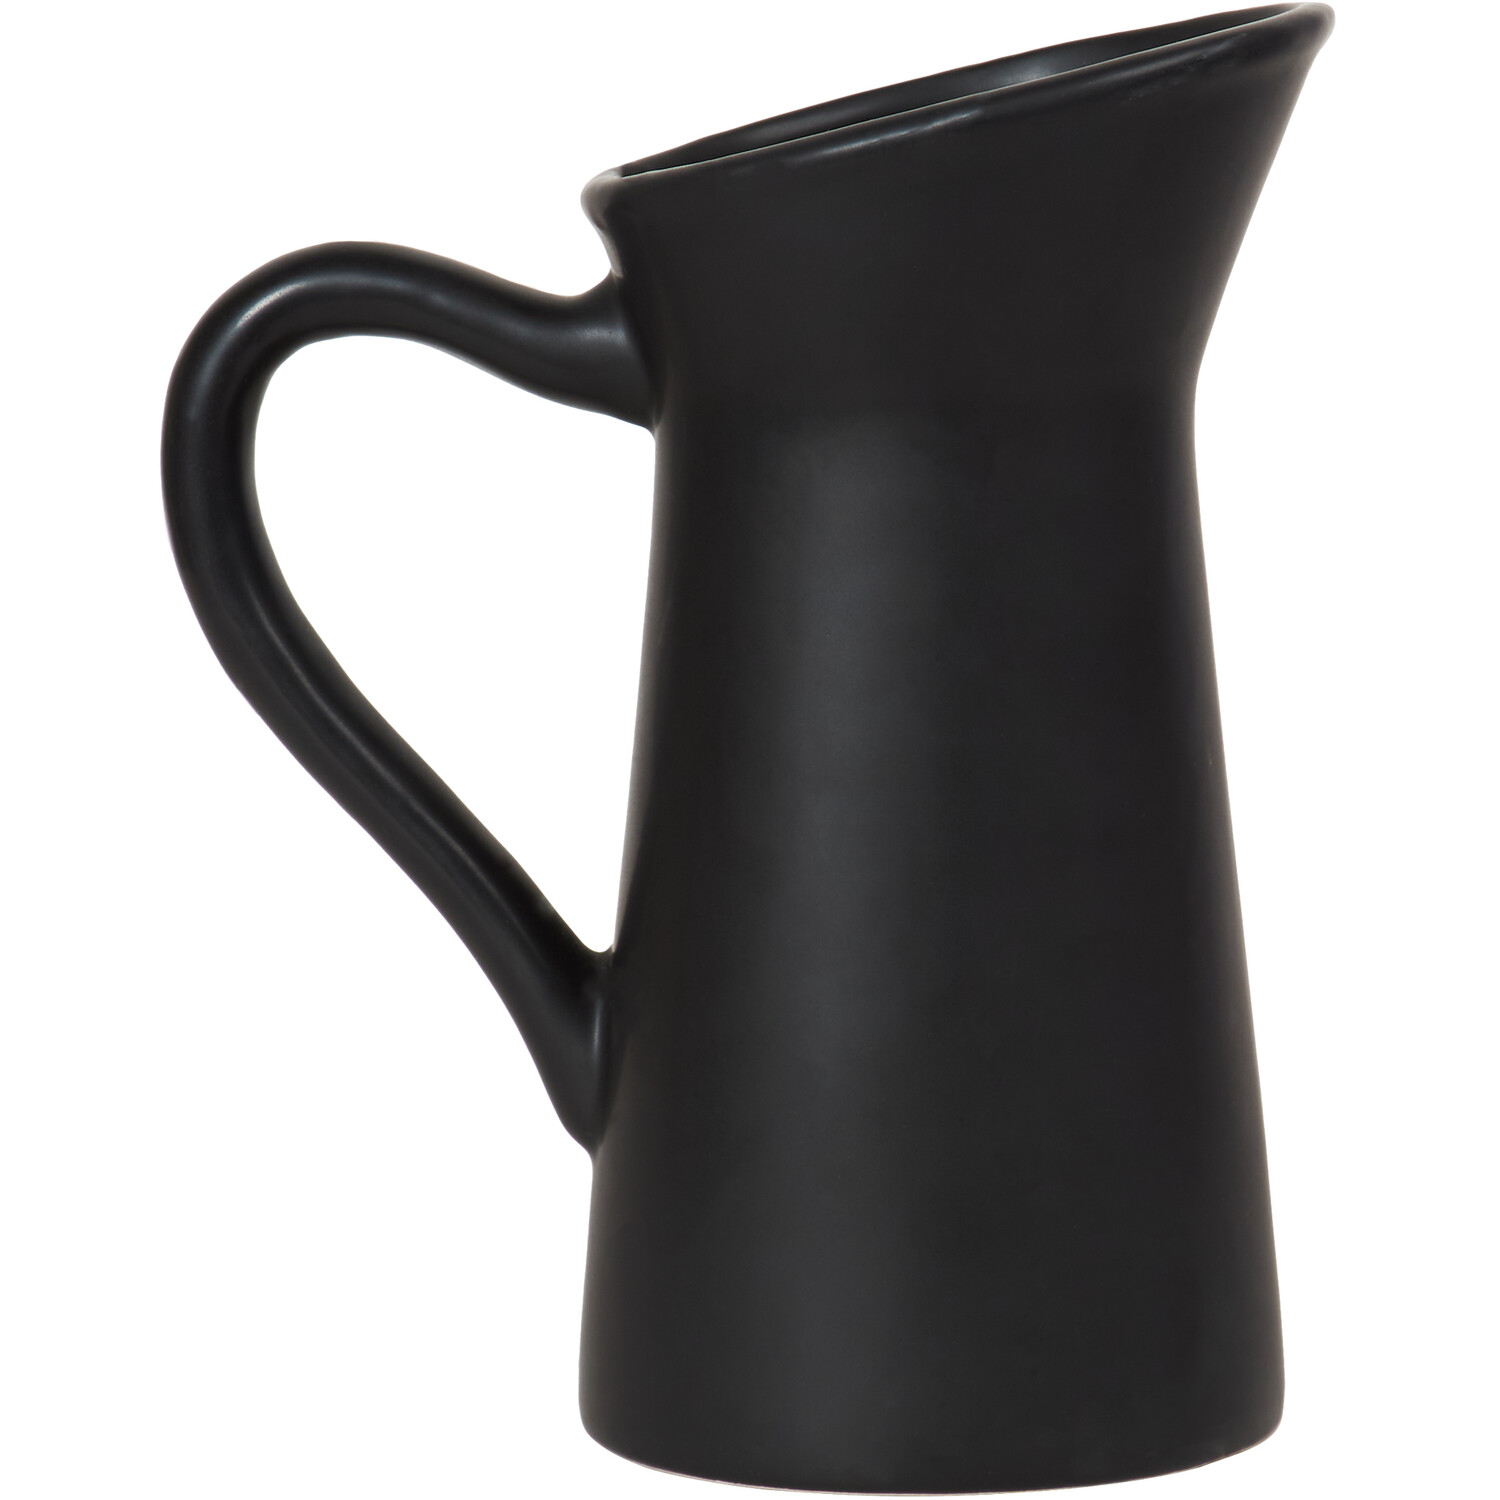 Matte Black Jug Shaped Ceramic Vase Image 1